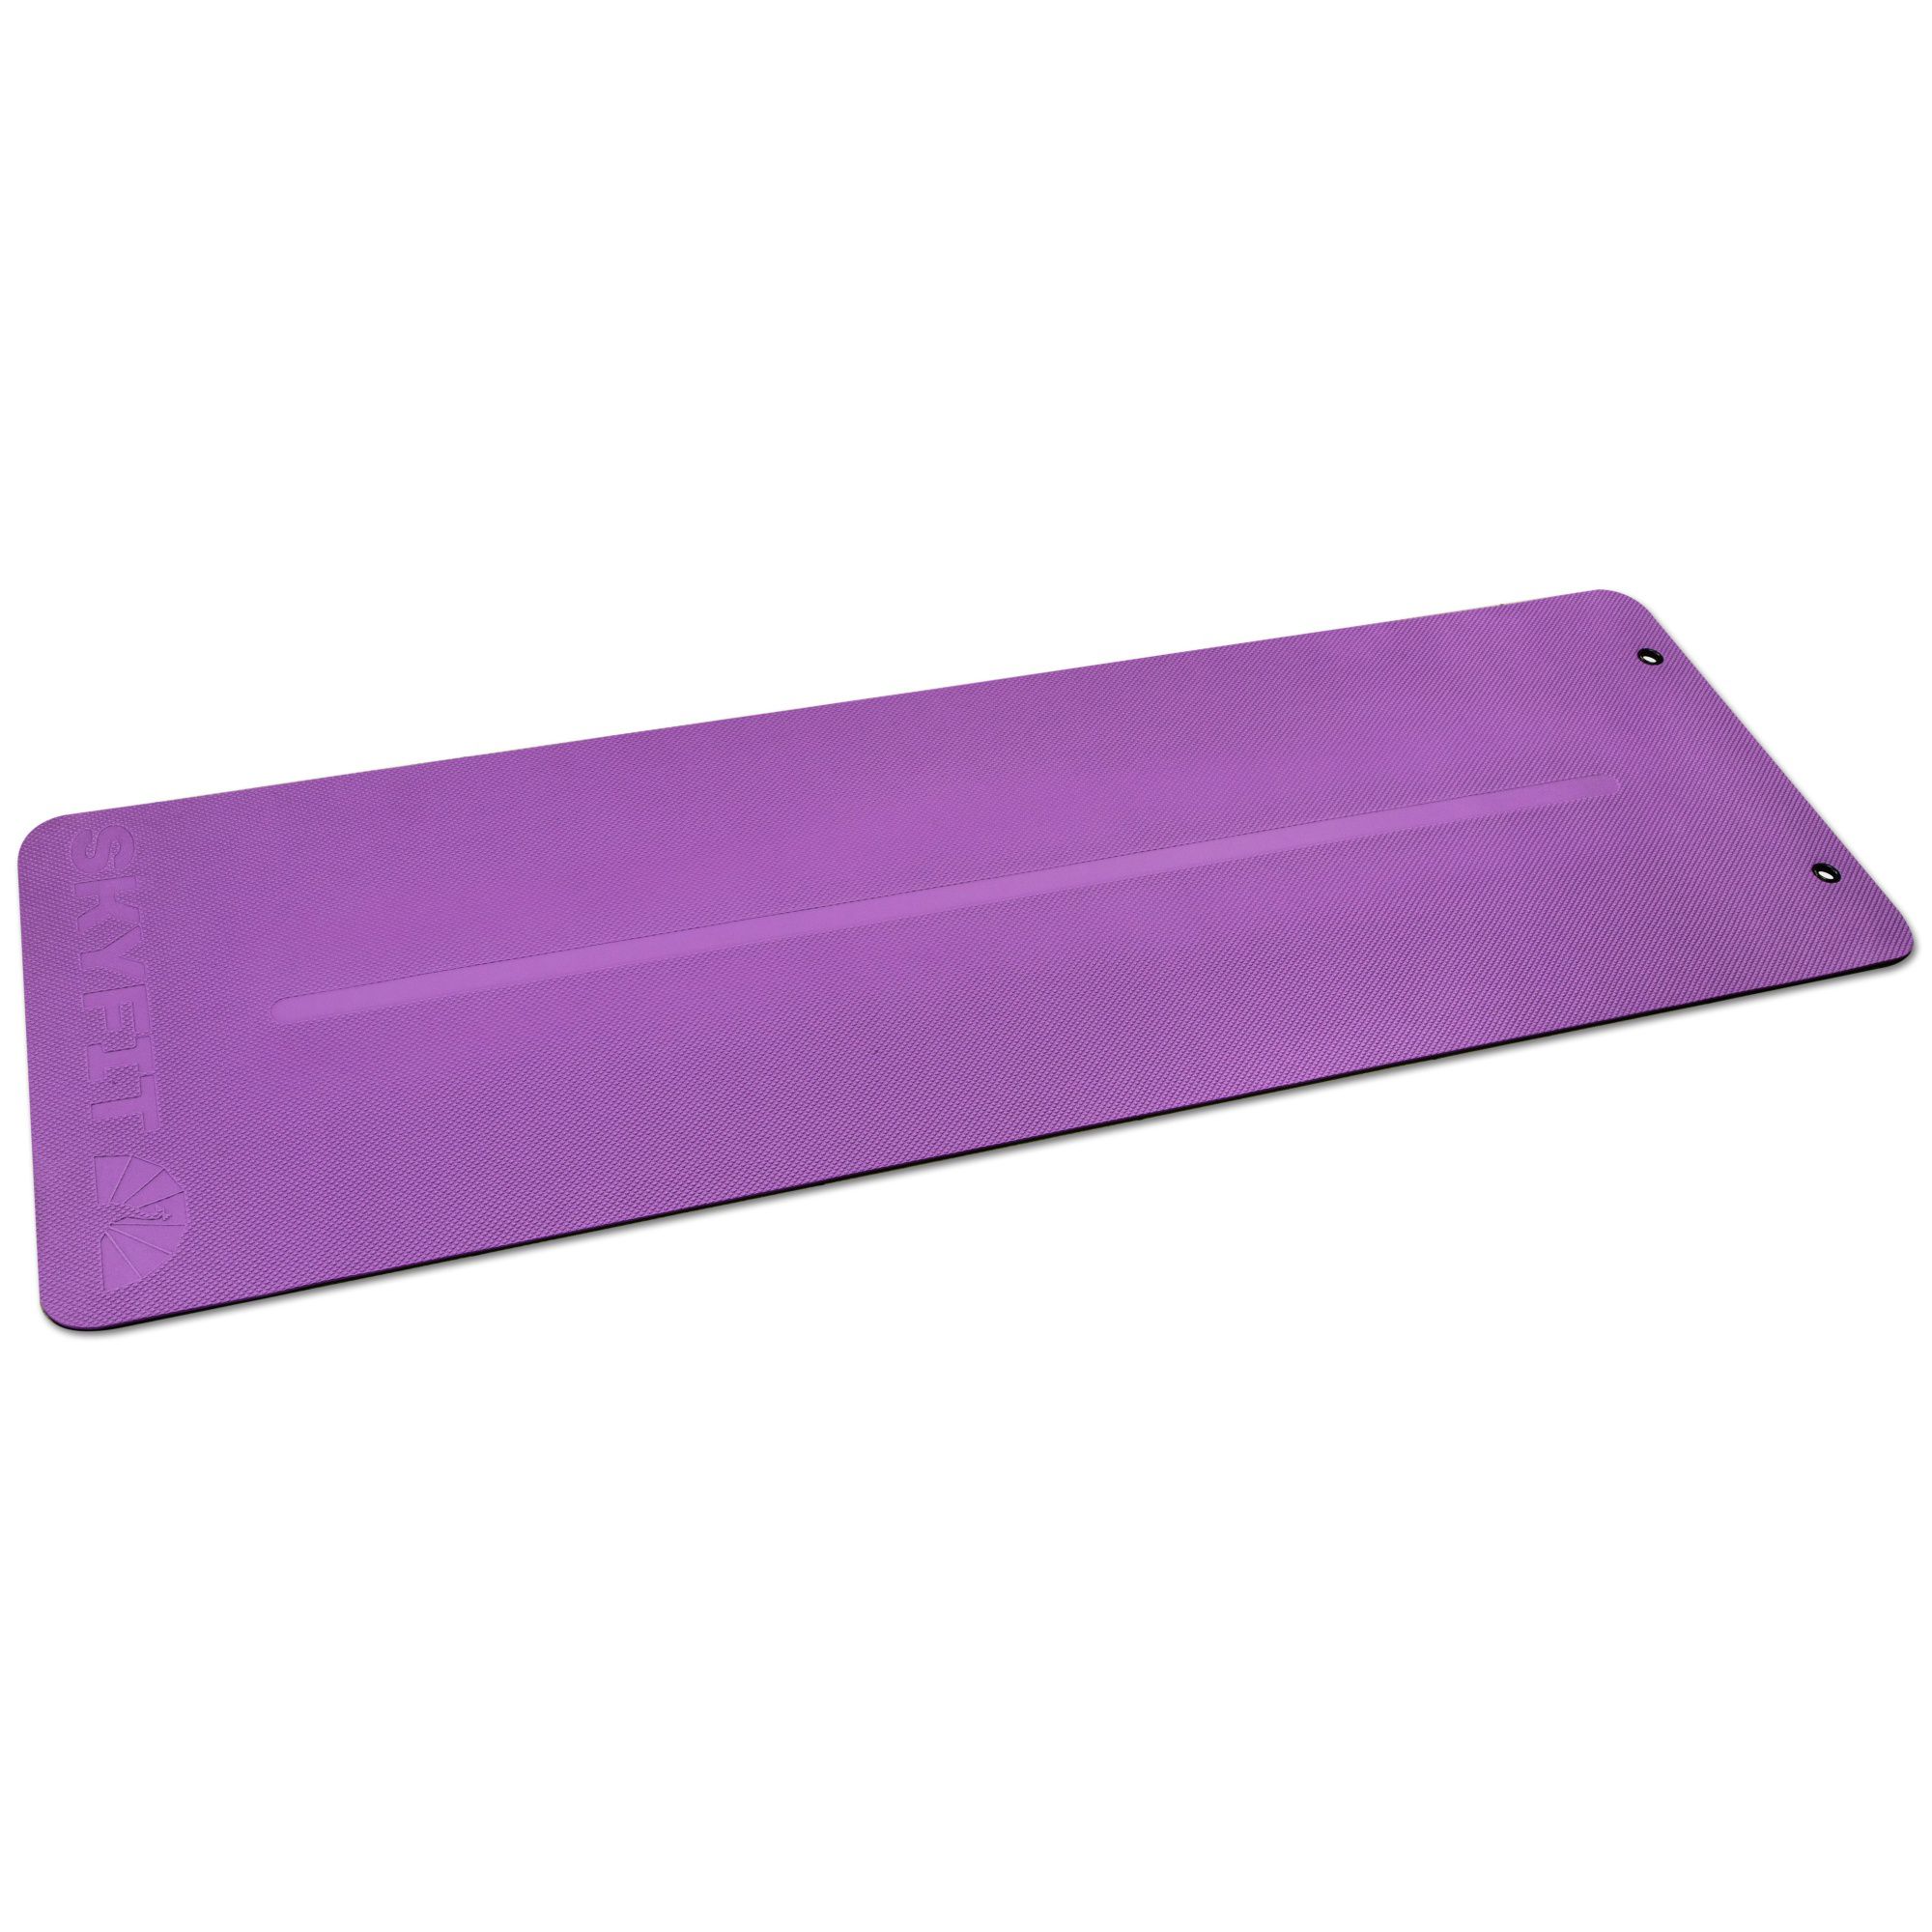 Купить Коврик для пилатес 180x60x0,5см SkyFit PRO SF-PMp фиолетовый,